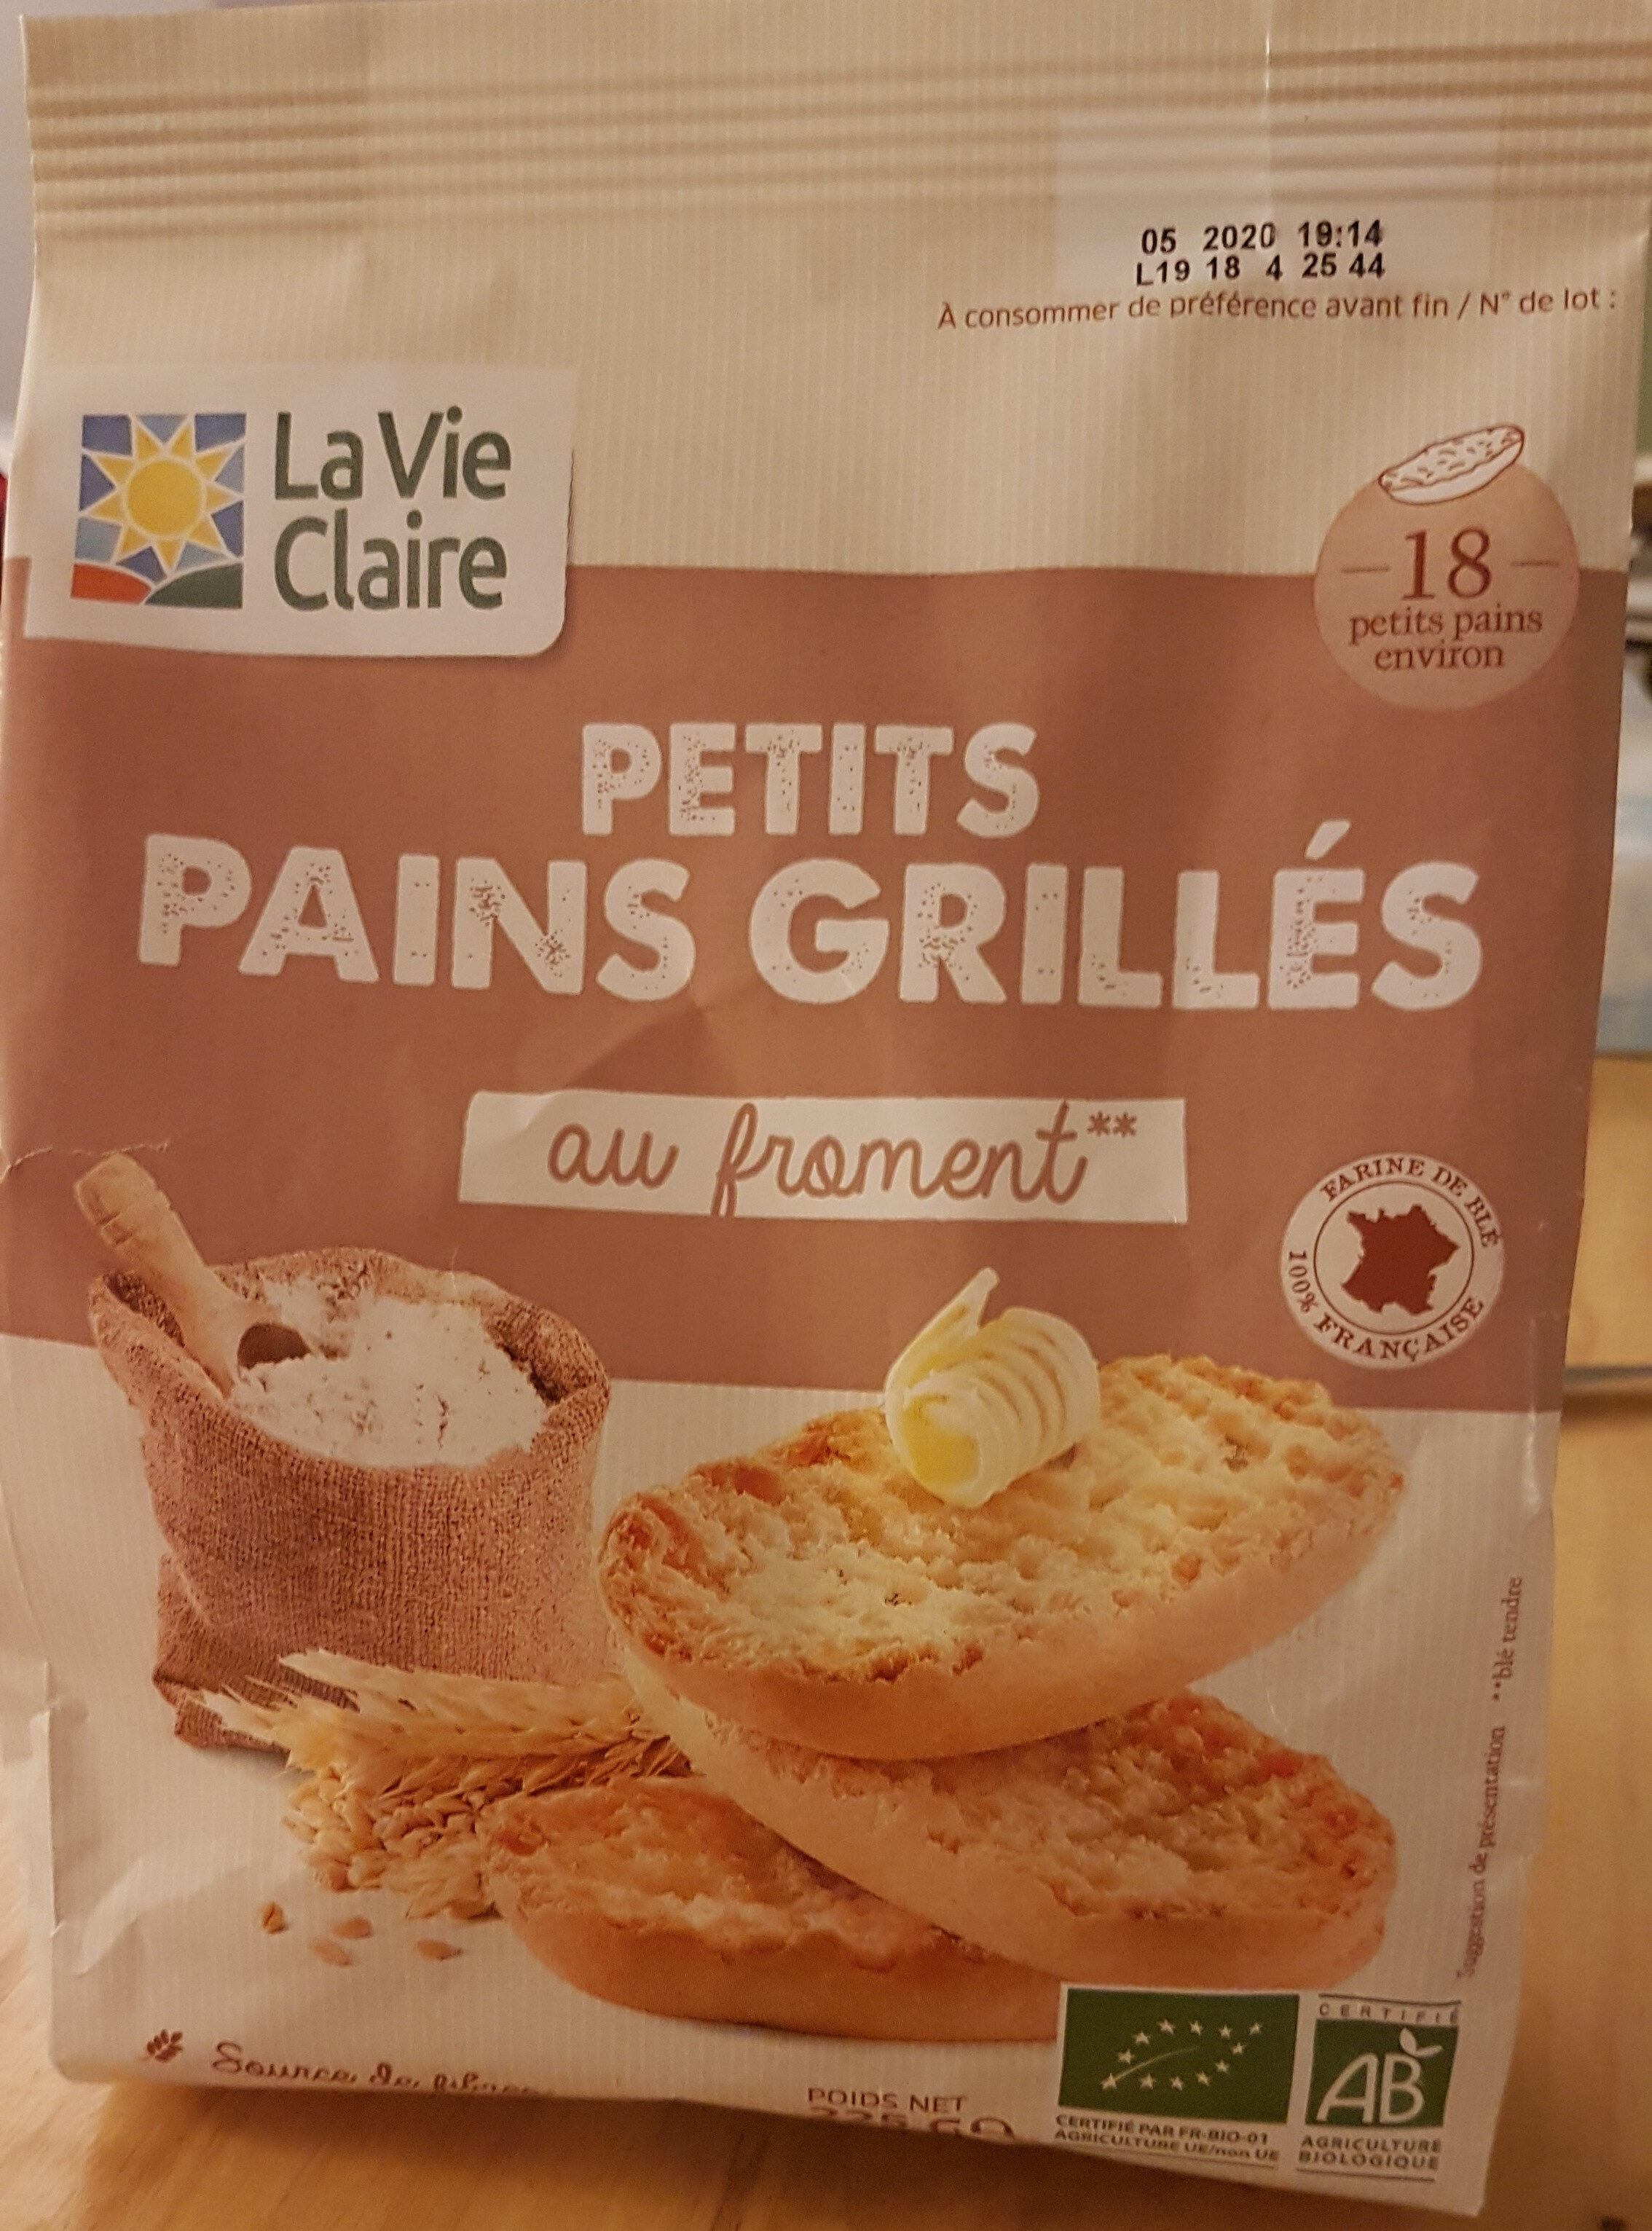 petits pains grillés - Ingredients - fr